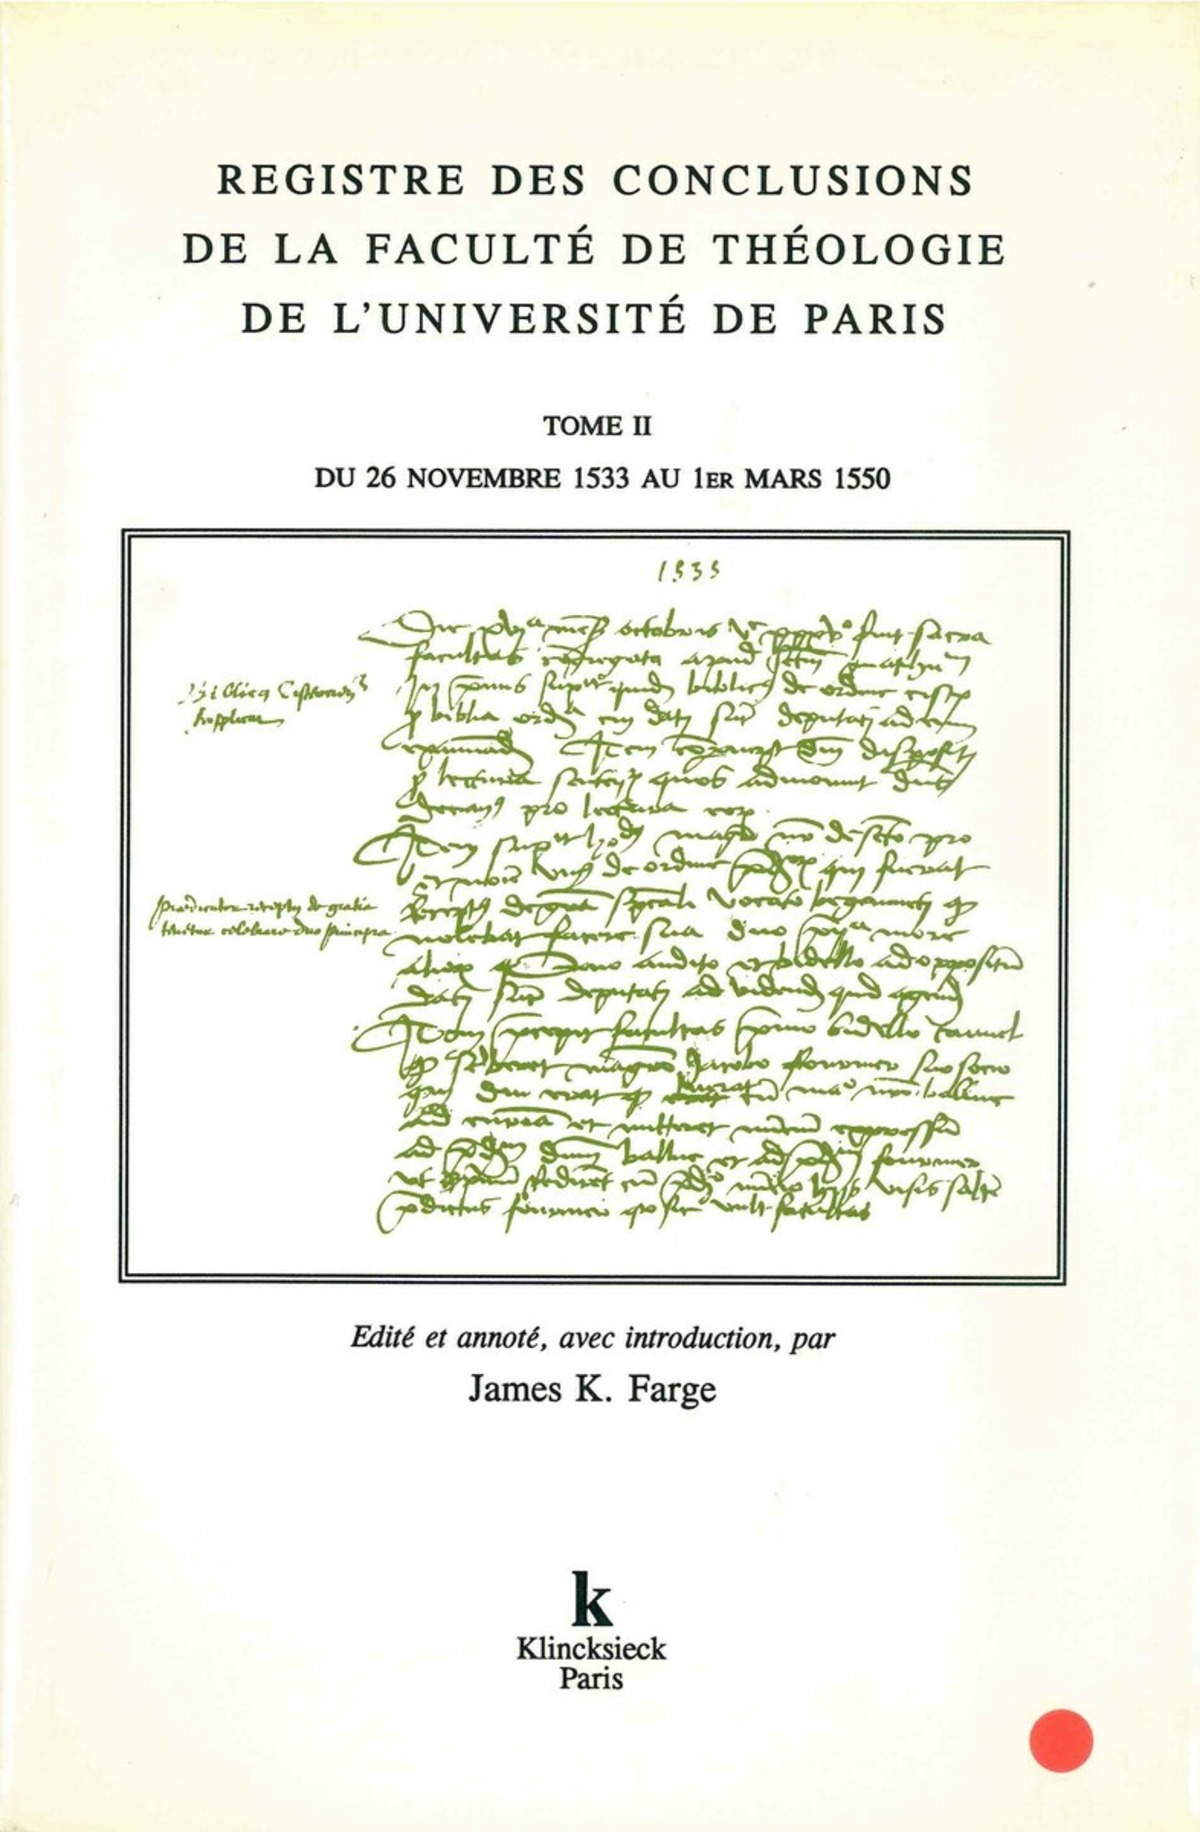 Registre des conclusions de la faculté de théologie de l'université de Paris (26 novembre 1533-1er mars 1550)